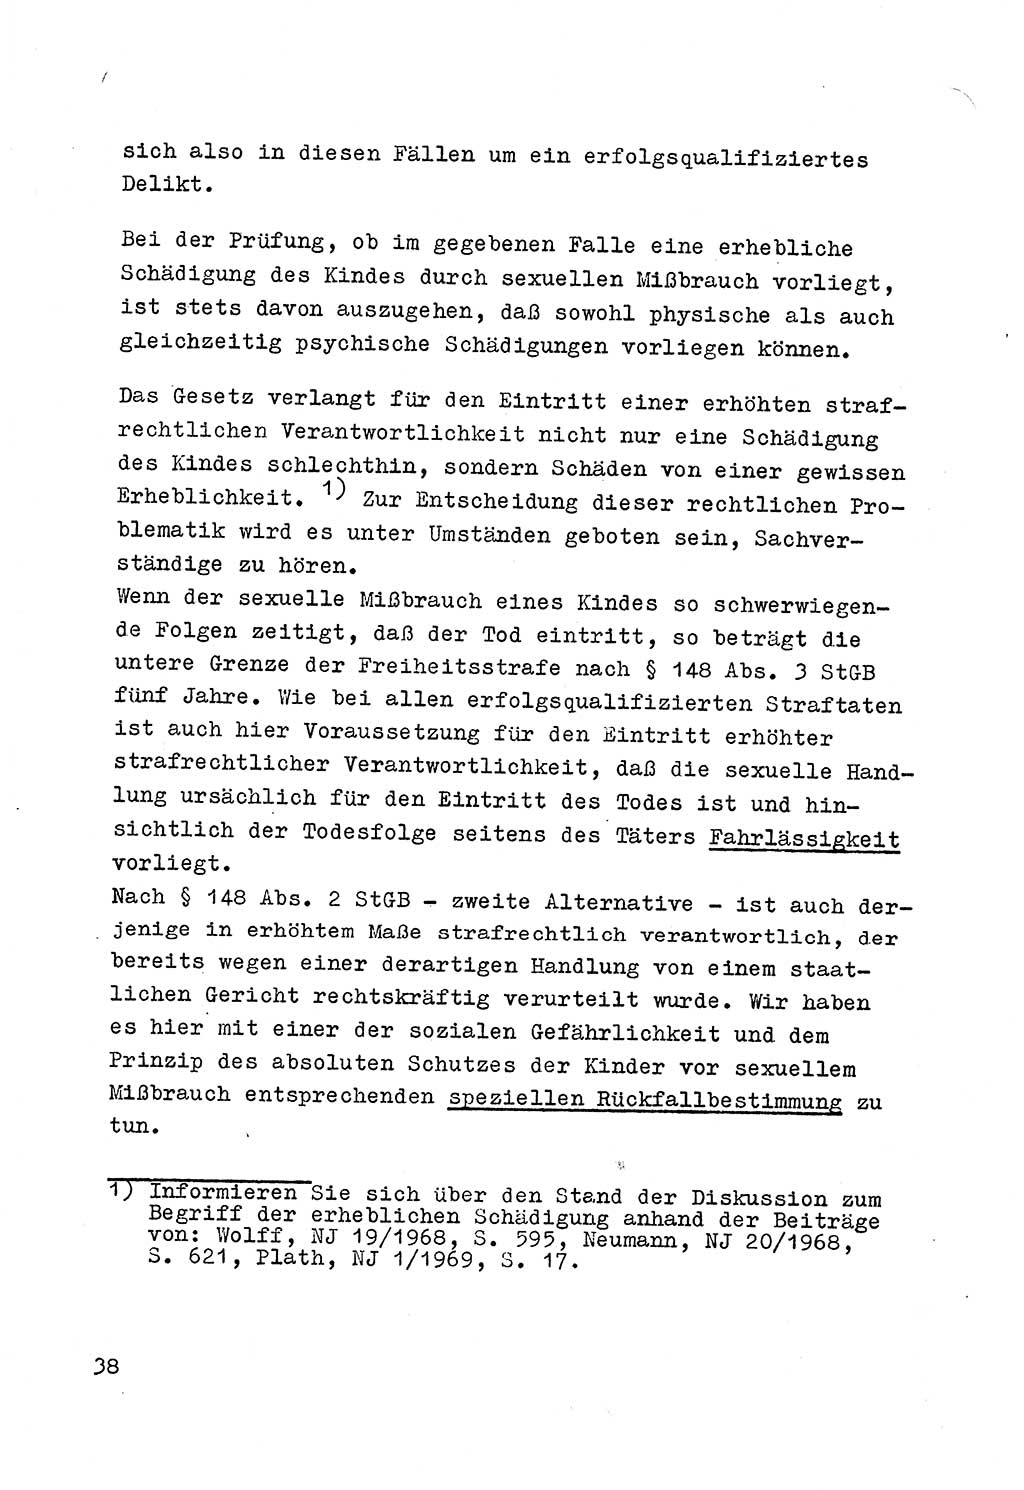 Strafrecht der DDR (Deutsche Demokratische Republik), Besonderer Teil, Lehrmaterial, Heft 4 1969, Seite 38 (Strafr. DDR BT Lehrmat. H. 4 1969, S. 38)